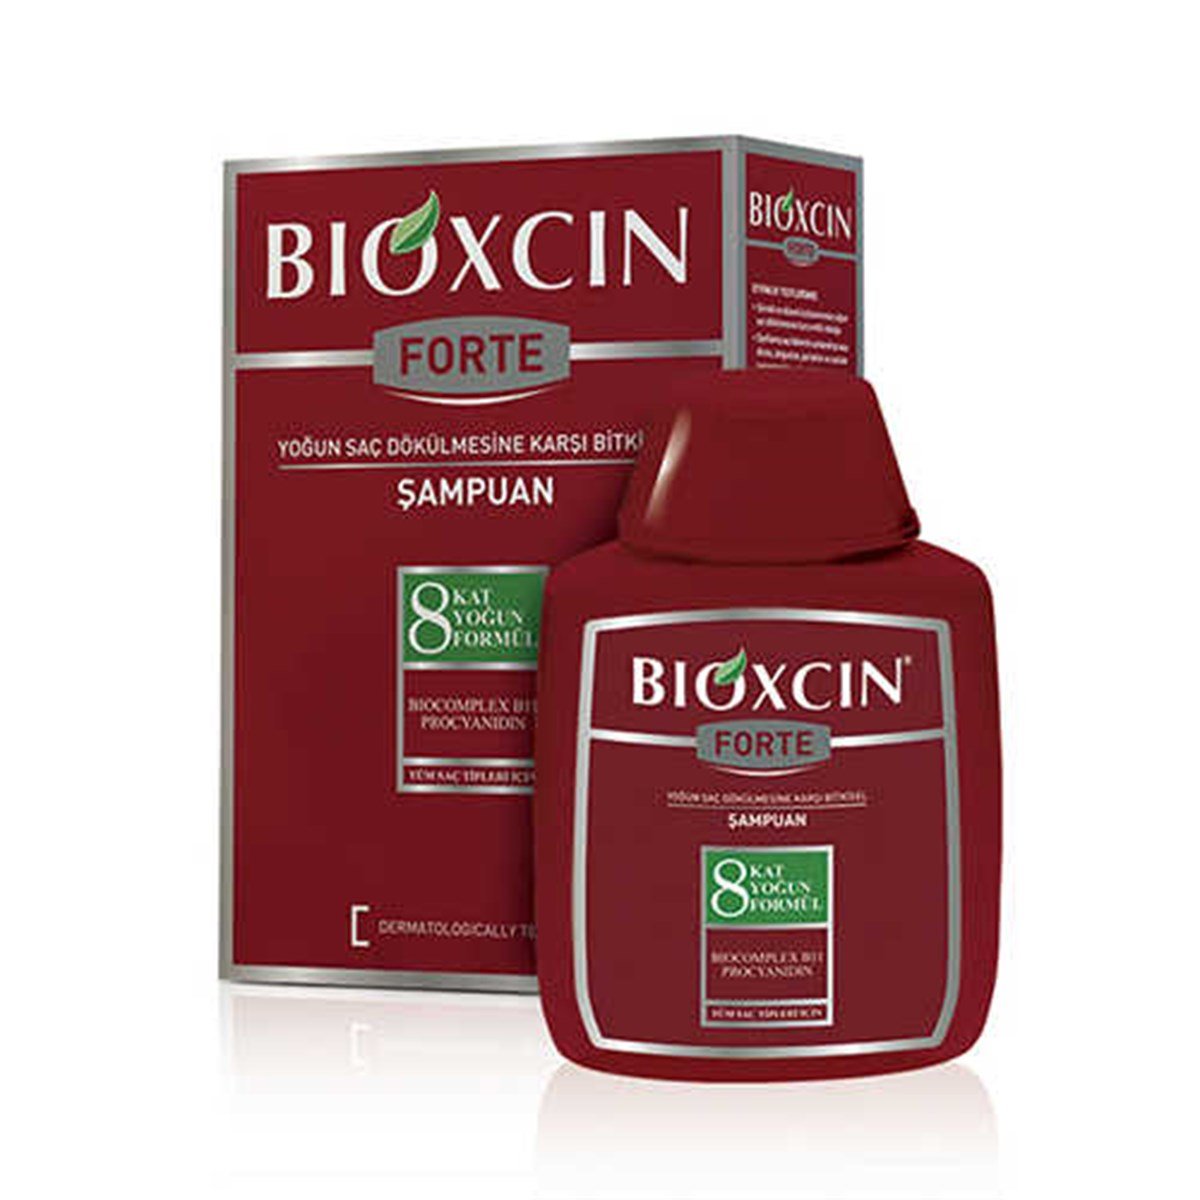 Bioxcin Forte 300 ml Şampuan Tüm Saç tipleri İçin Fiyatları |  Dermosiparis.com